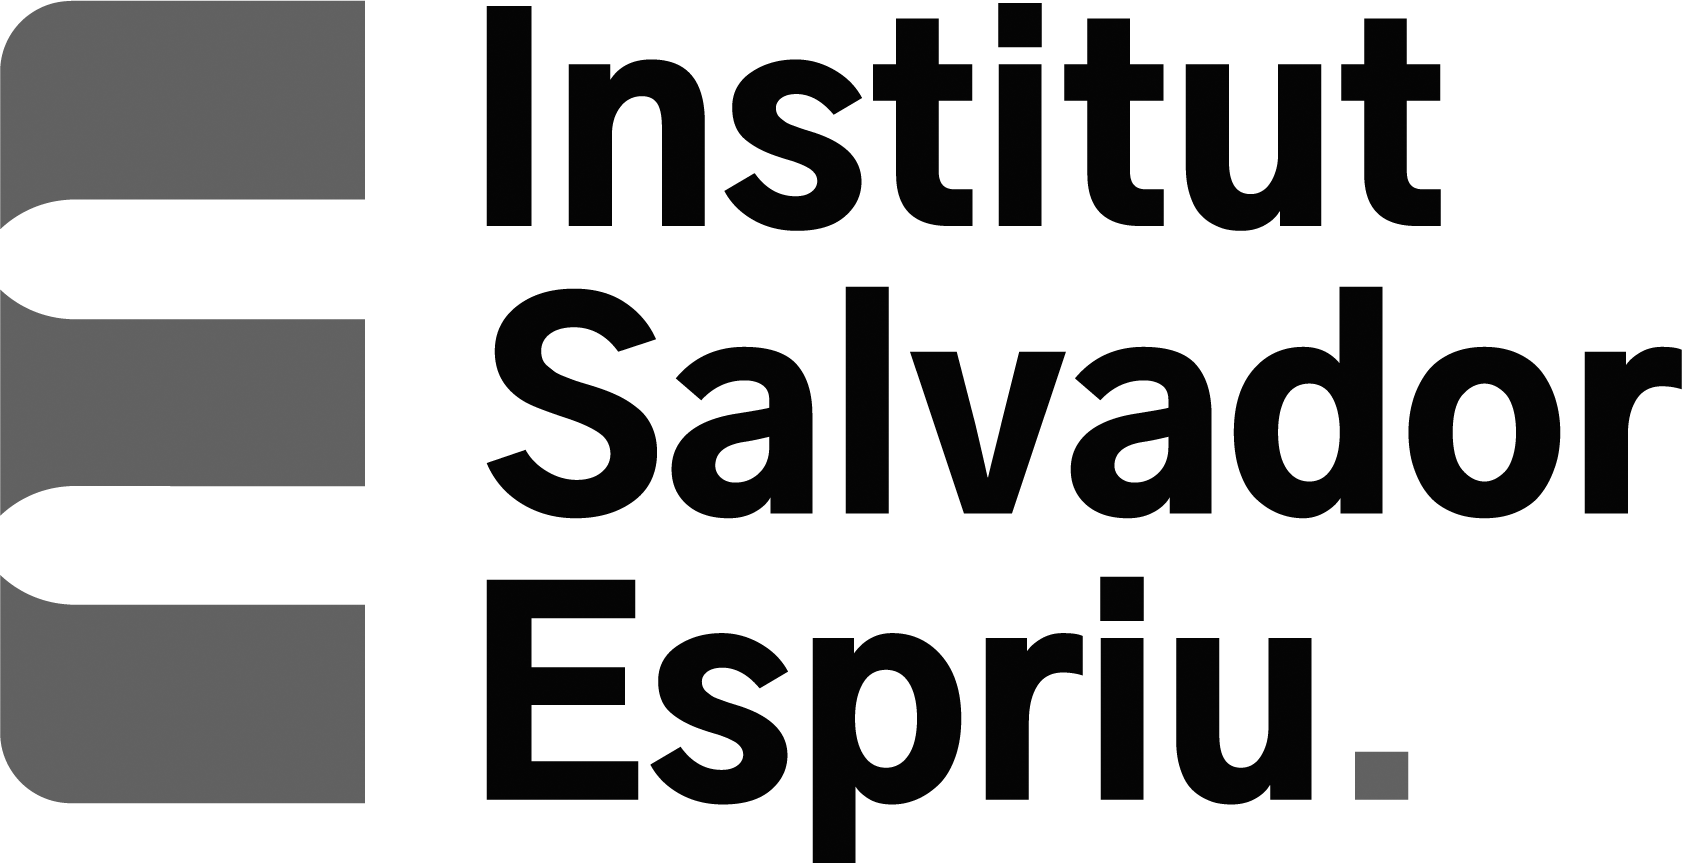 Institut Salvador Espriu